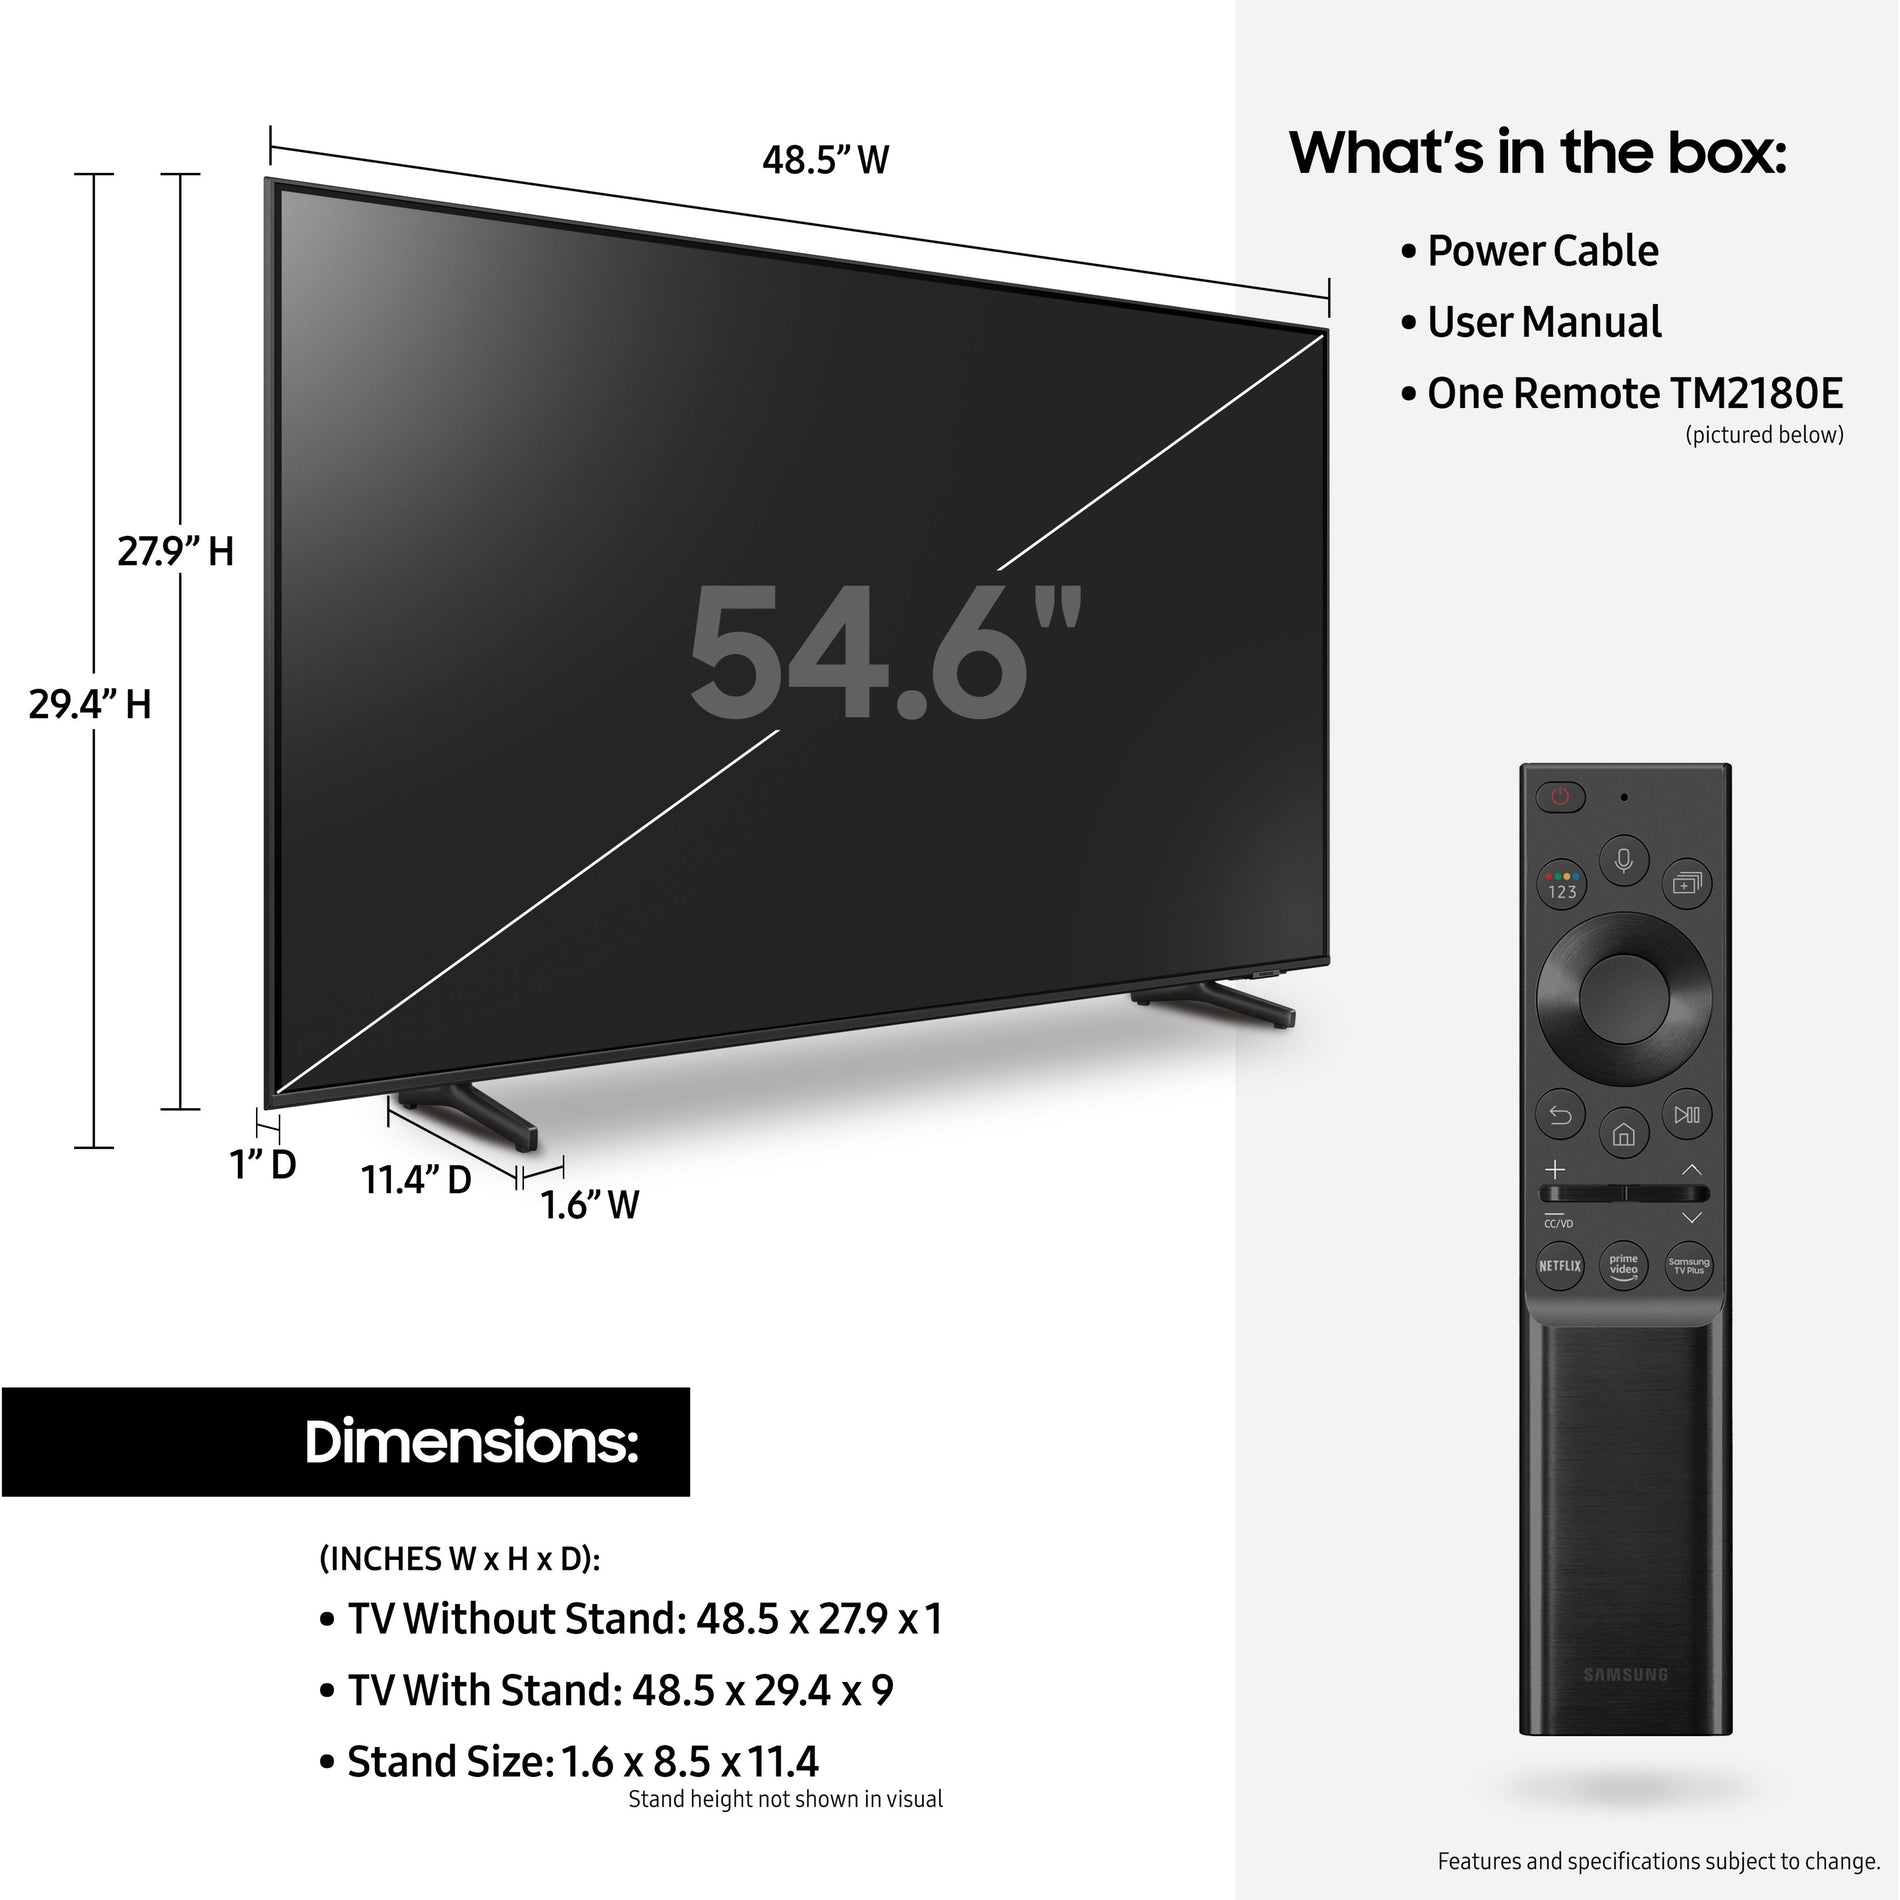 Samsung QN55Q60AAFXZA Q60A 55" Smart LED-LCD TV, 4K, Quantum HDR, AI Upscaling, Ambient Mode +